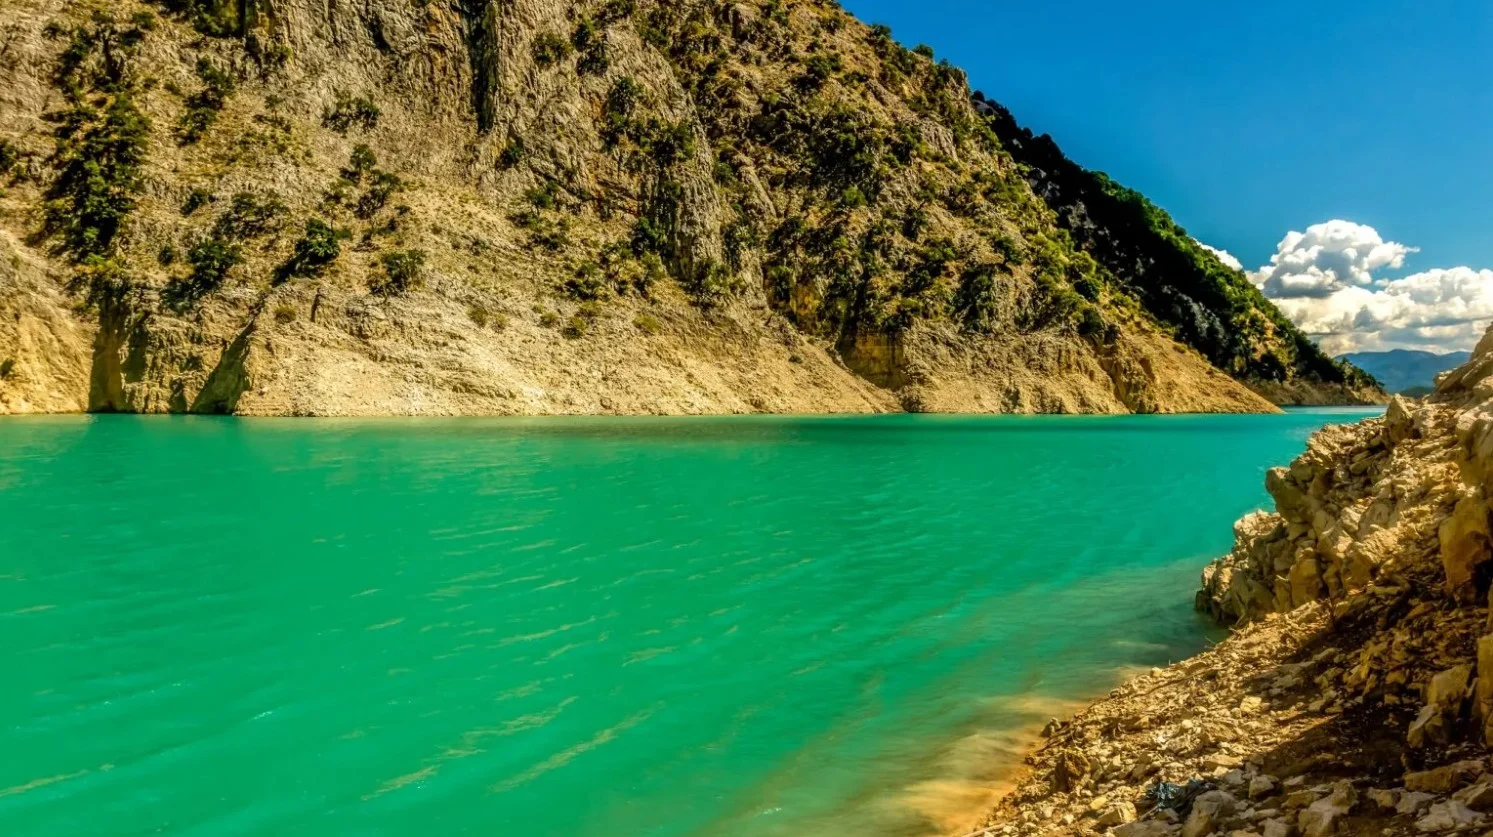 Ο Αχιλλέας Ποταμός πηγάζει από ένα μαγικό μέρος στην κορυφή του όρους Λάκμος και καλύπτει τις περιοχές Τρικάλων, Κούρτιζας, Άρτας, Ευρυδανίας και Αιτωλοκαρνανίας / Φωτογραφία: Shutterstock